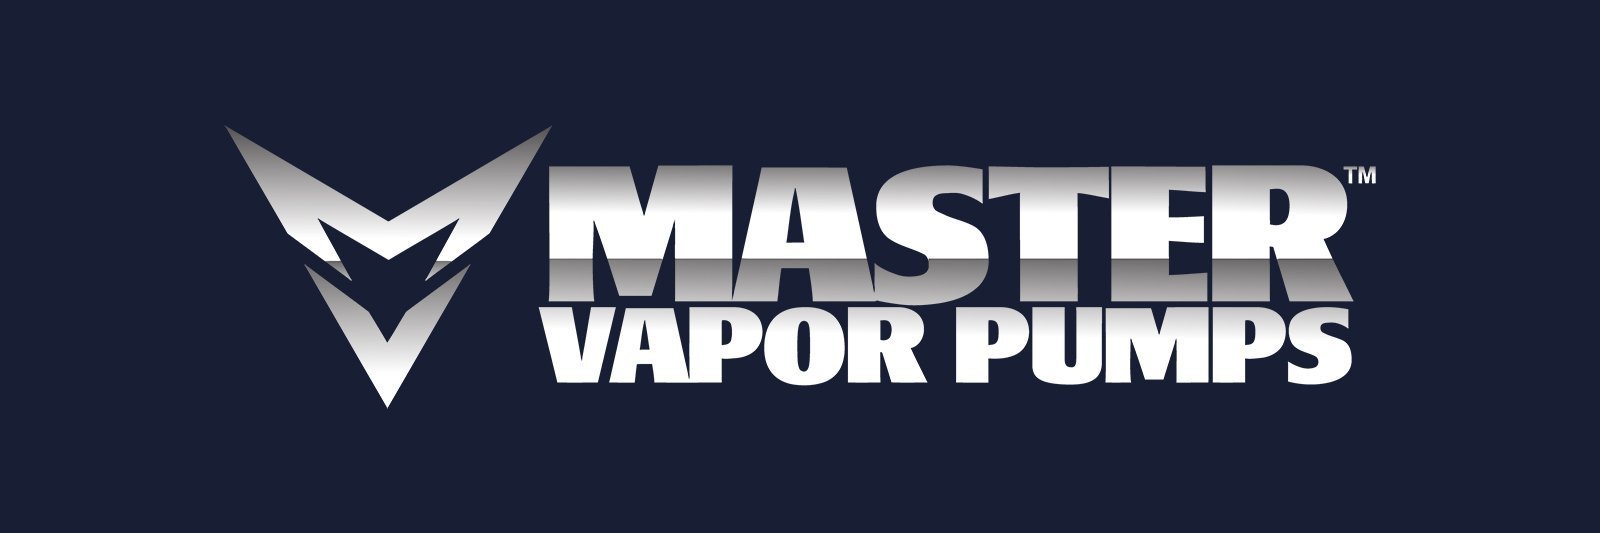 Master Vapor Pumps, Pump Part - MVP - 60 PSI, 150 PSI, Liquid, XL150 - Diaphragm Cover Bolts - 8 pack